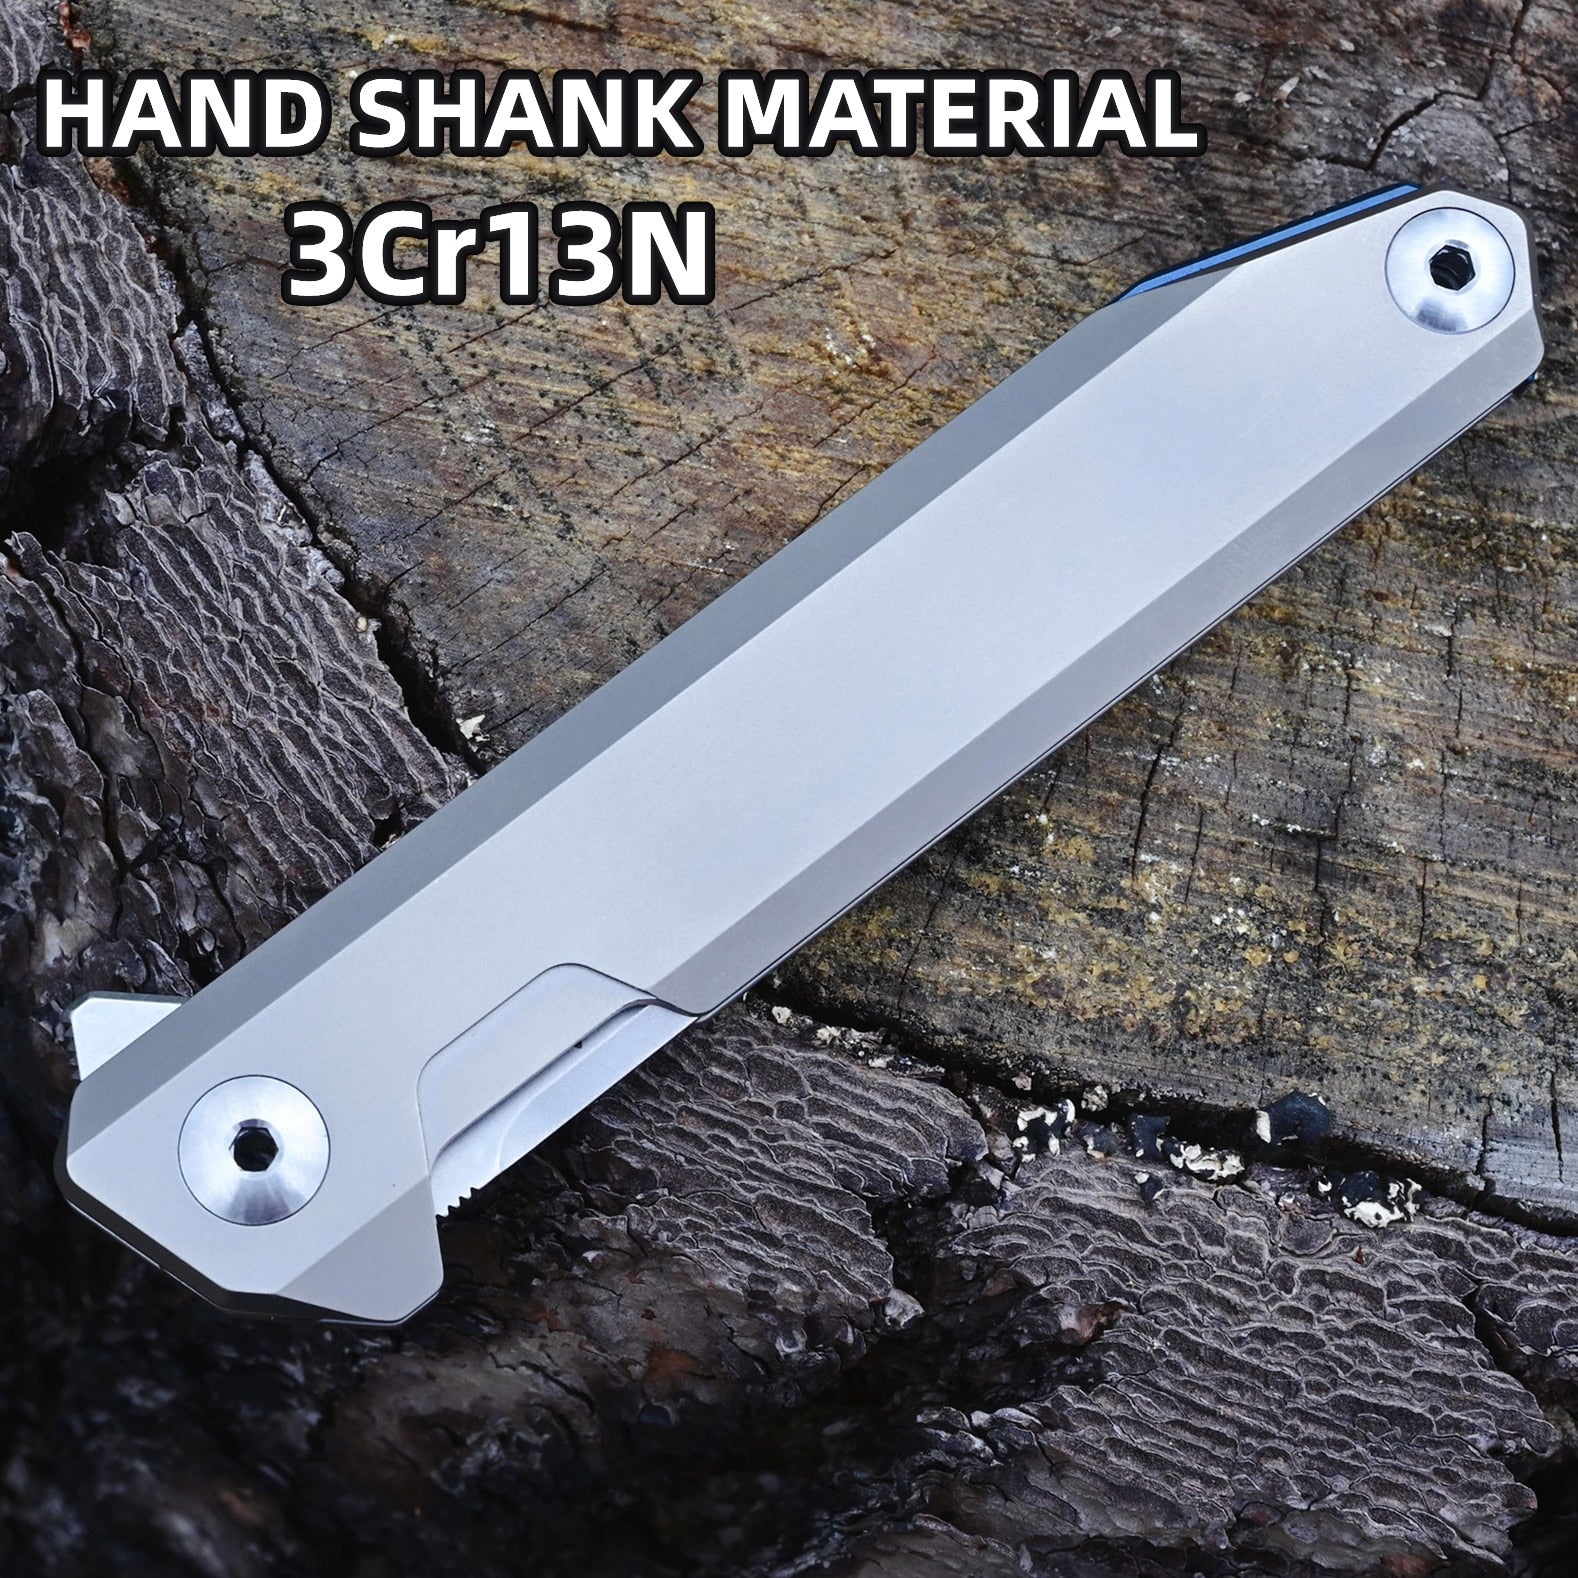 SRM 1161 14C28N/S35VN Blade Flipper Ball Bearings Folding Pocket Knife